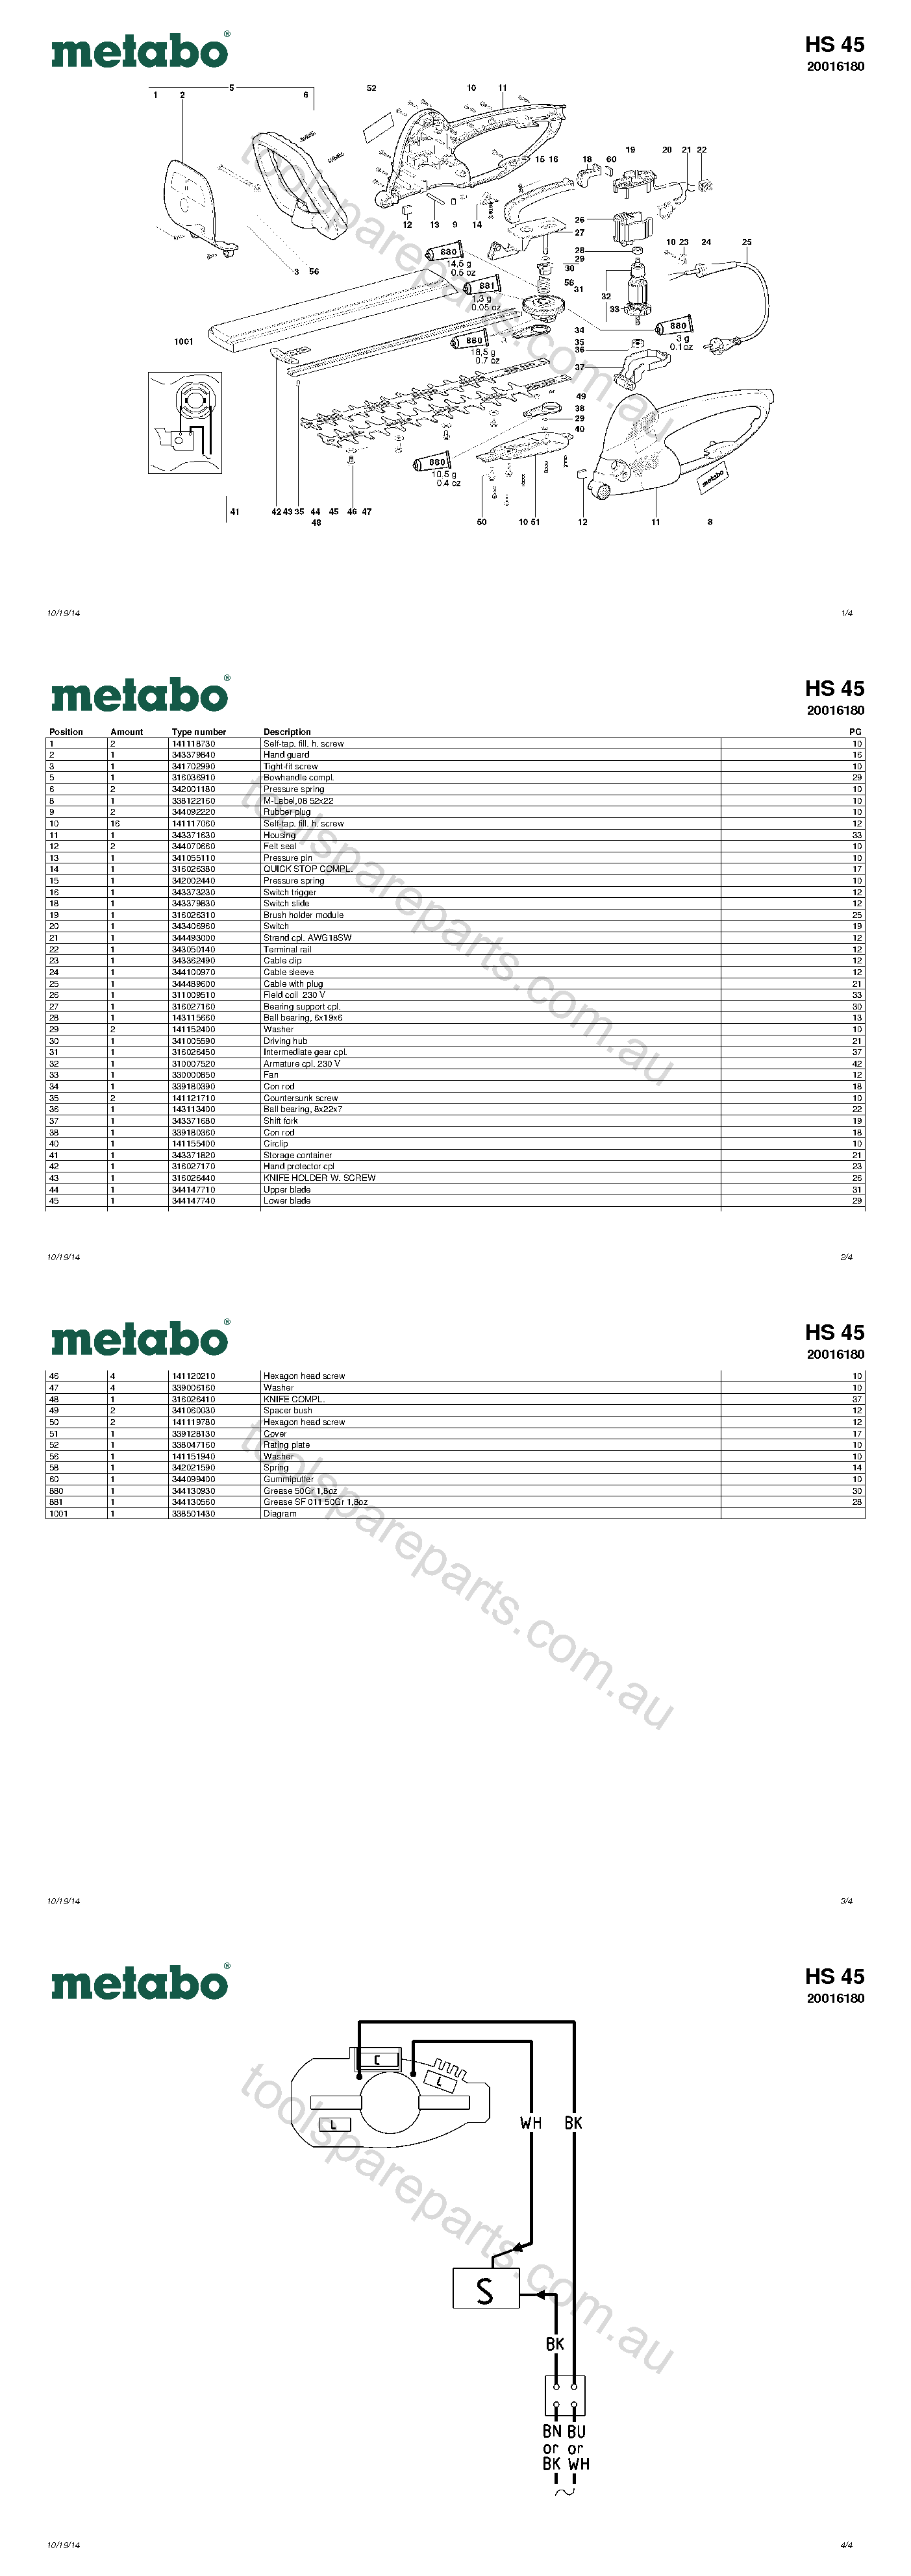 Metabo HS 45 20016180  Diagram 1